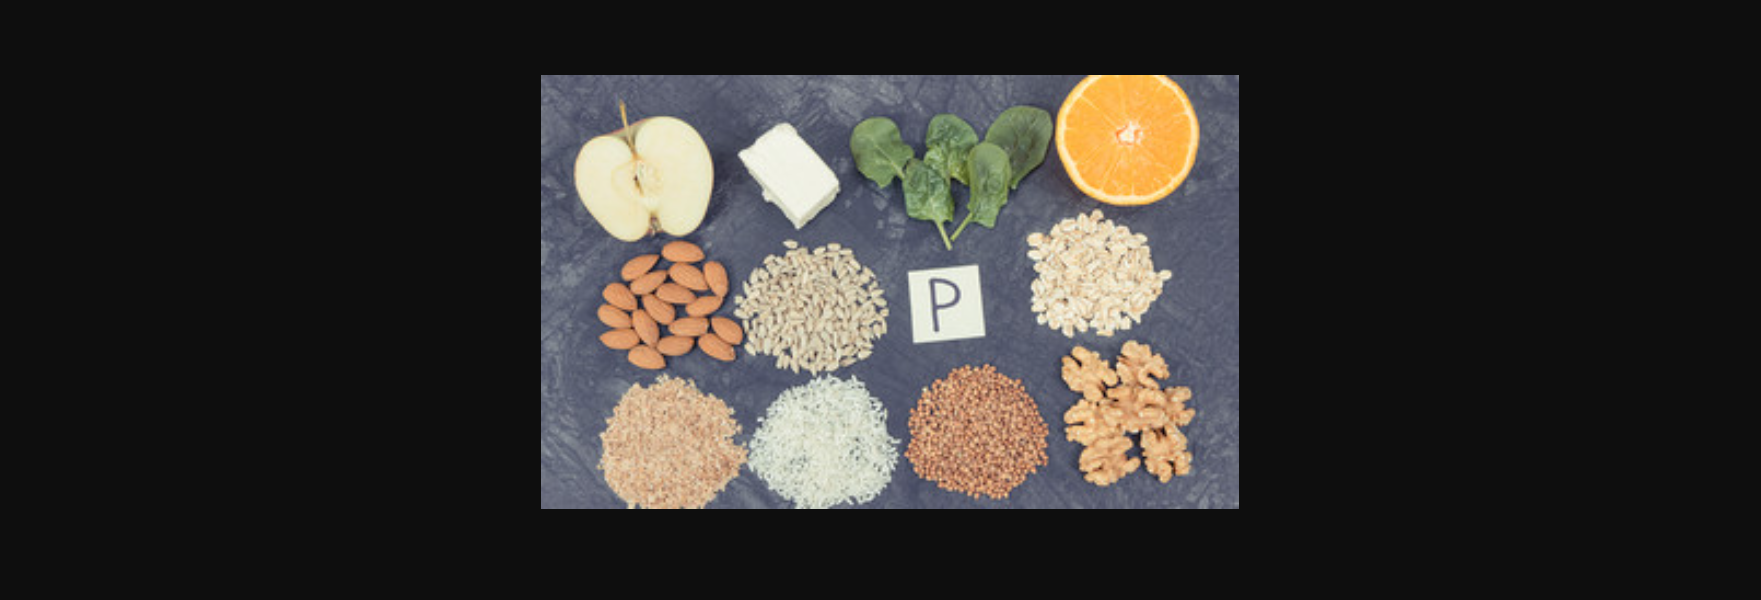 Η «άγνωστη» βιταμίνη P και οι τροφές που εξασφαλίζουν επαρκή πρόσληψη